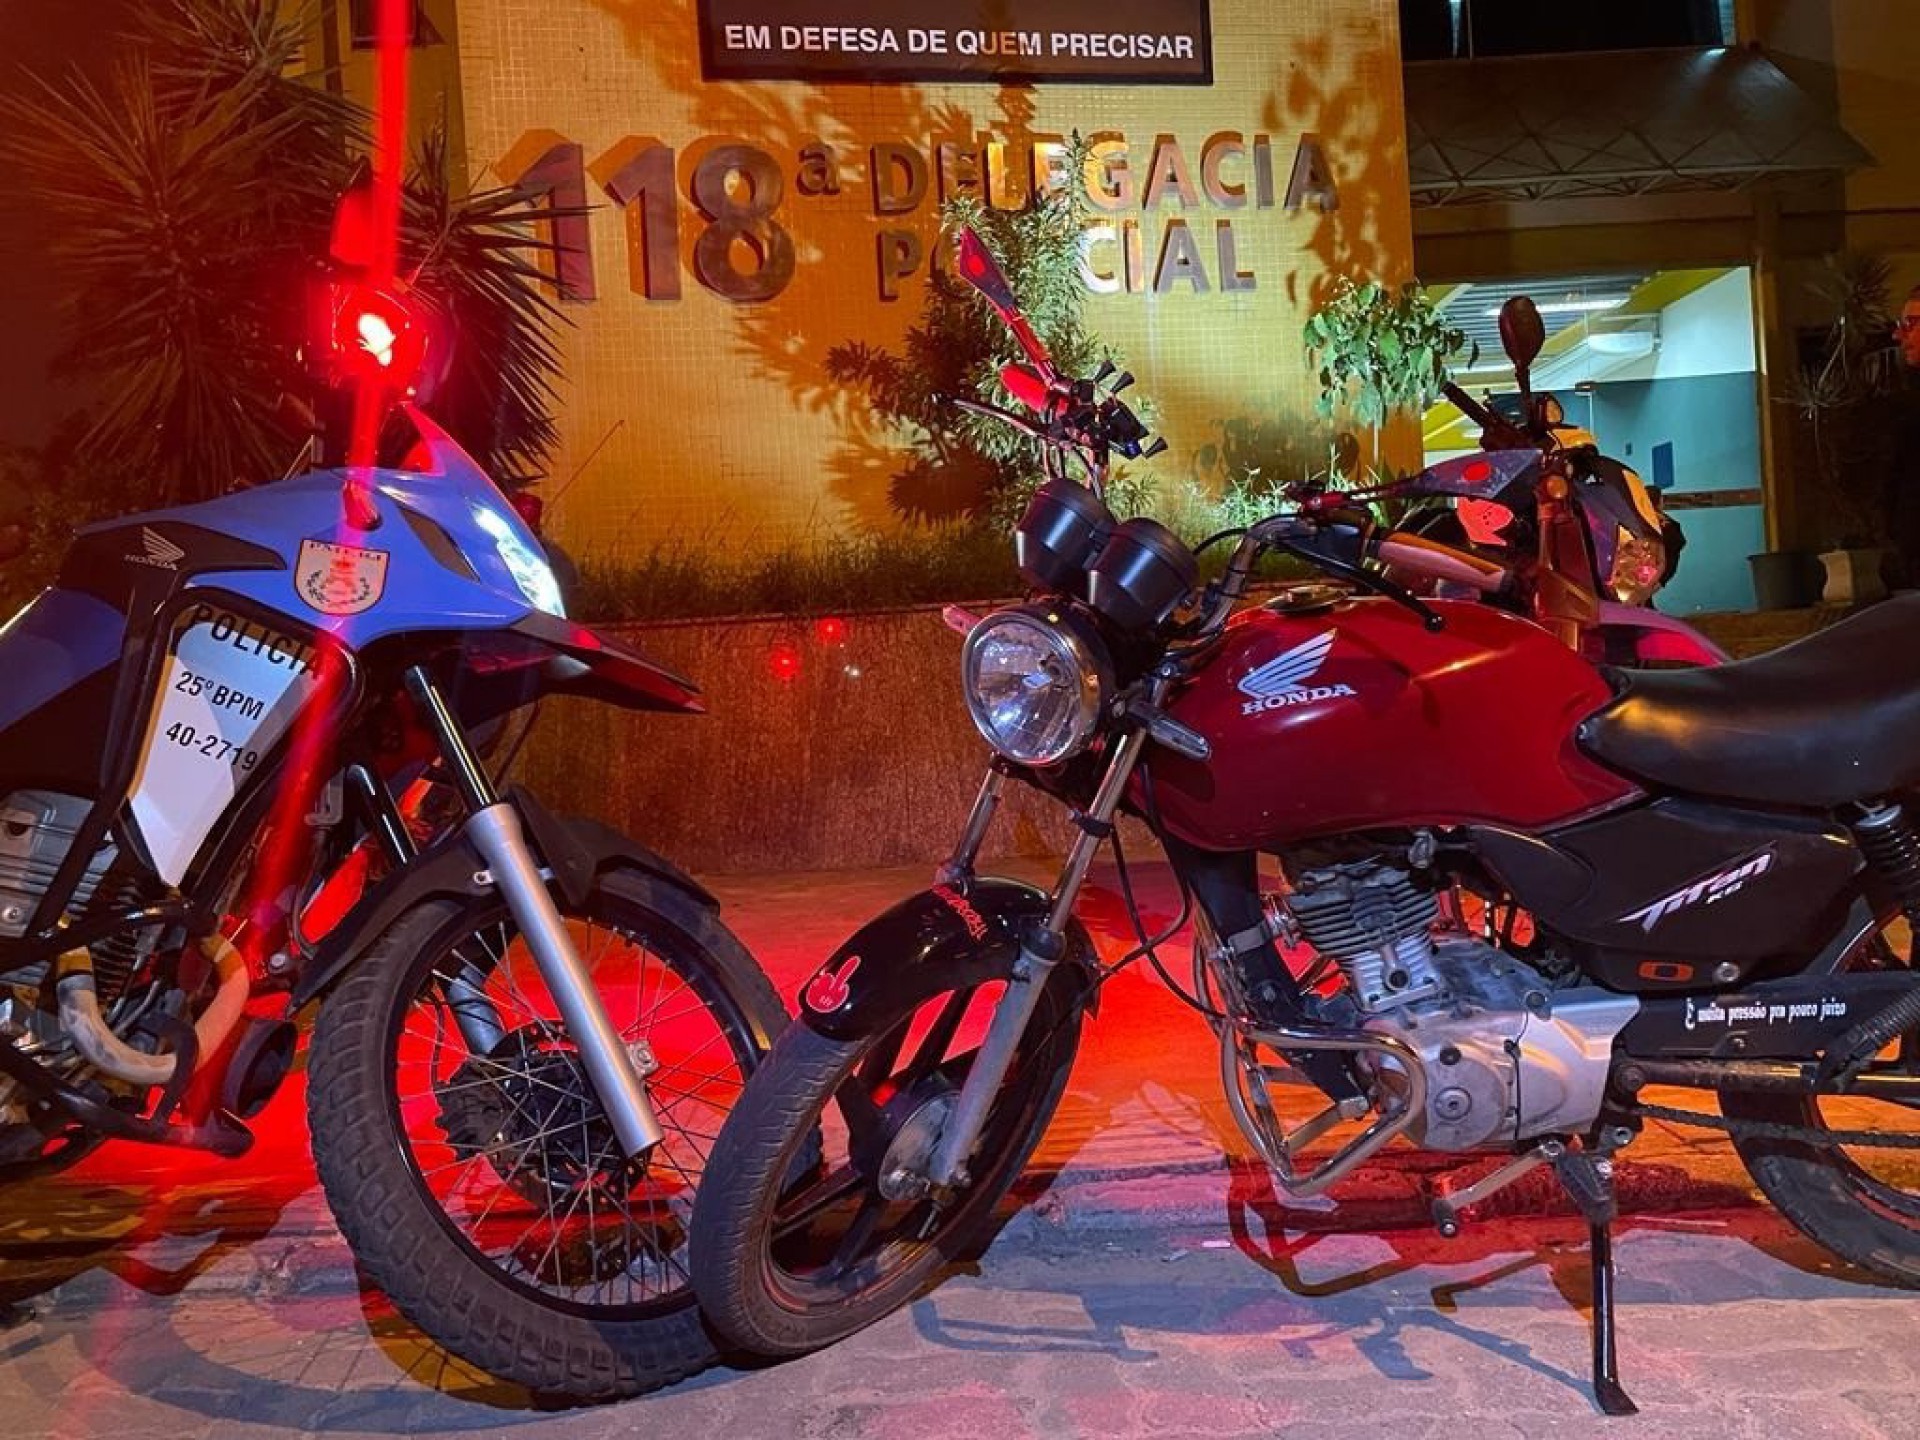 Dois homens são presos por receptação com moto furtada em Araruama - Letycia Rocha (RC24h)